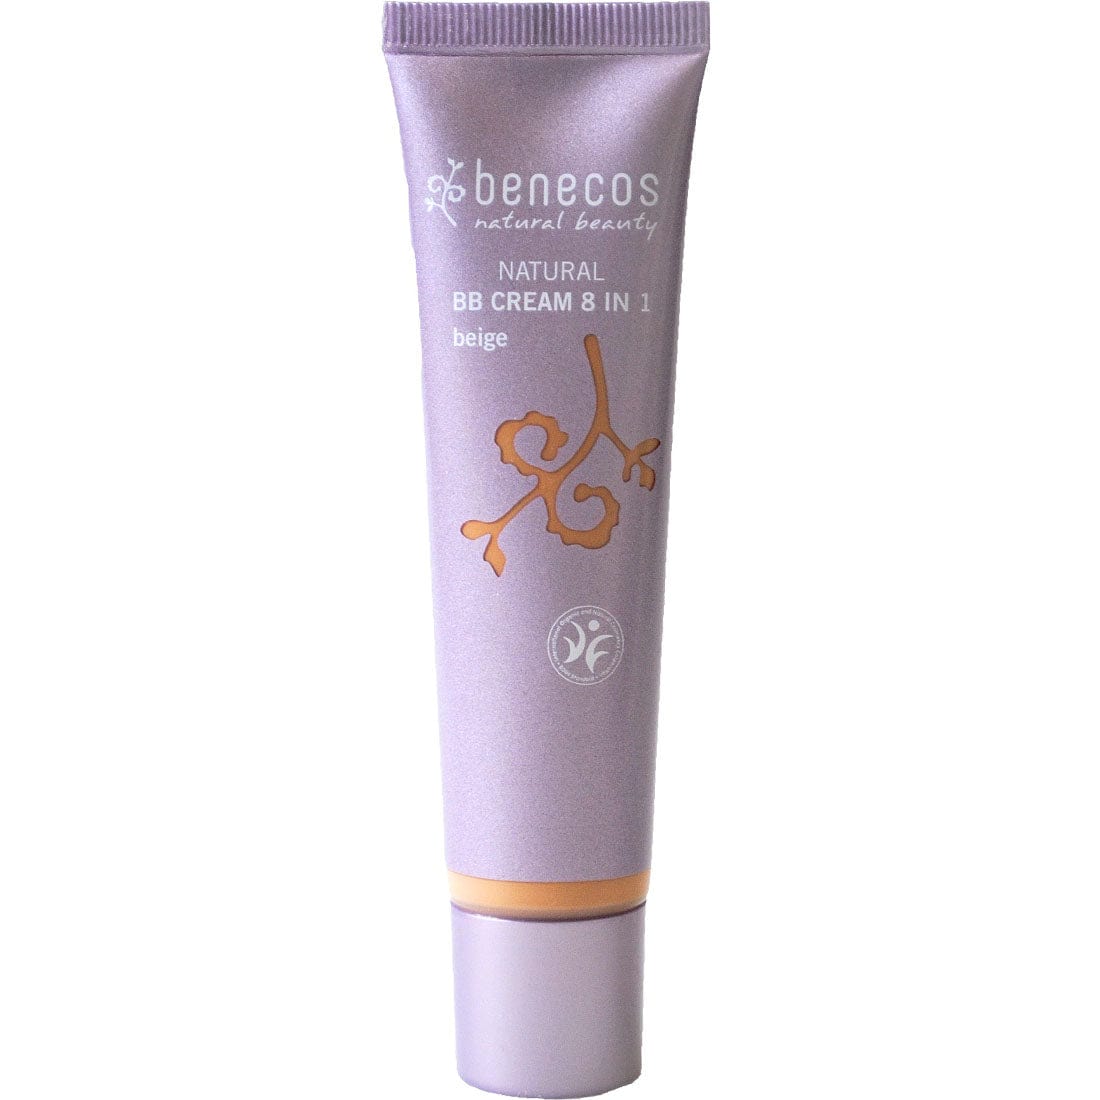 Benecos Natural BB Cream, 30ml